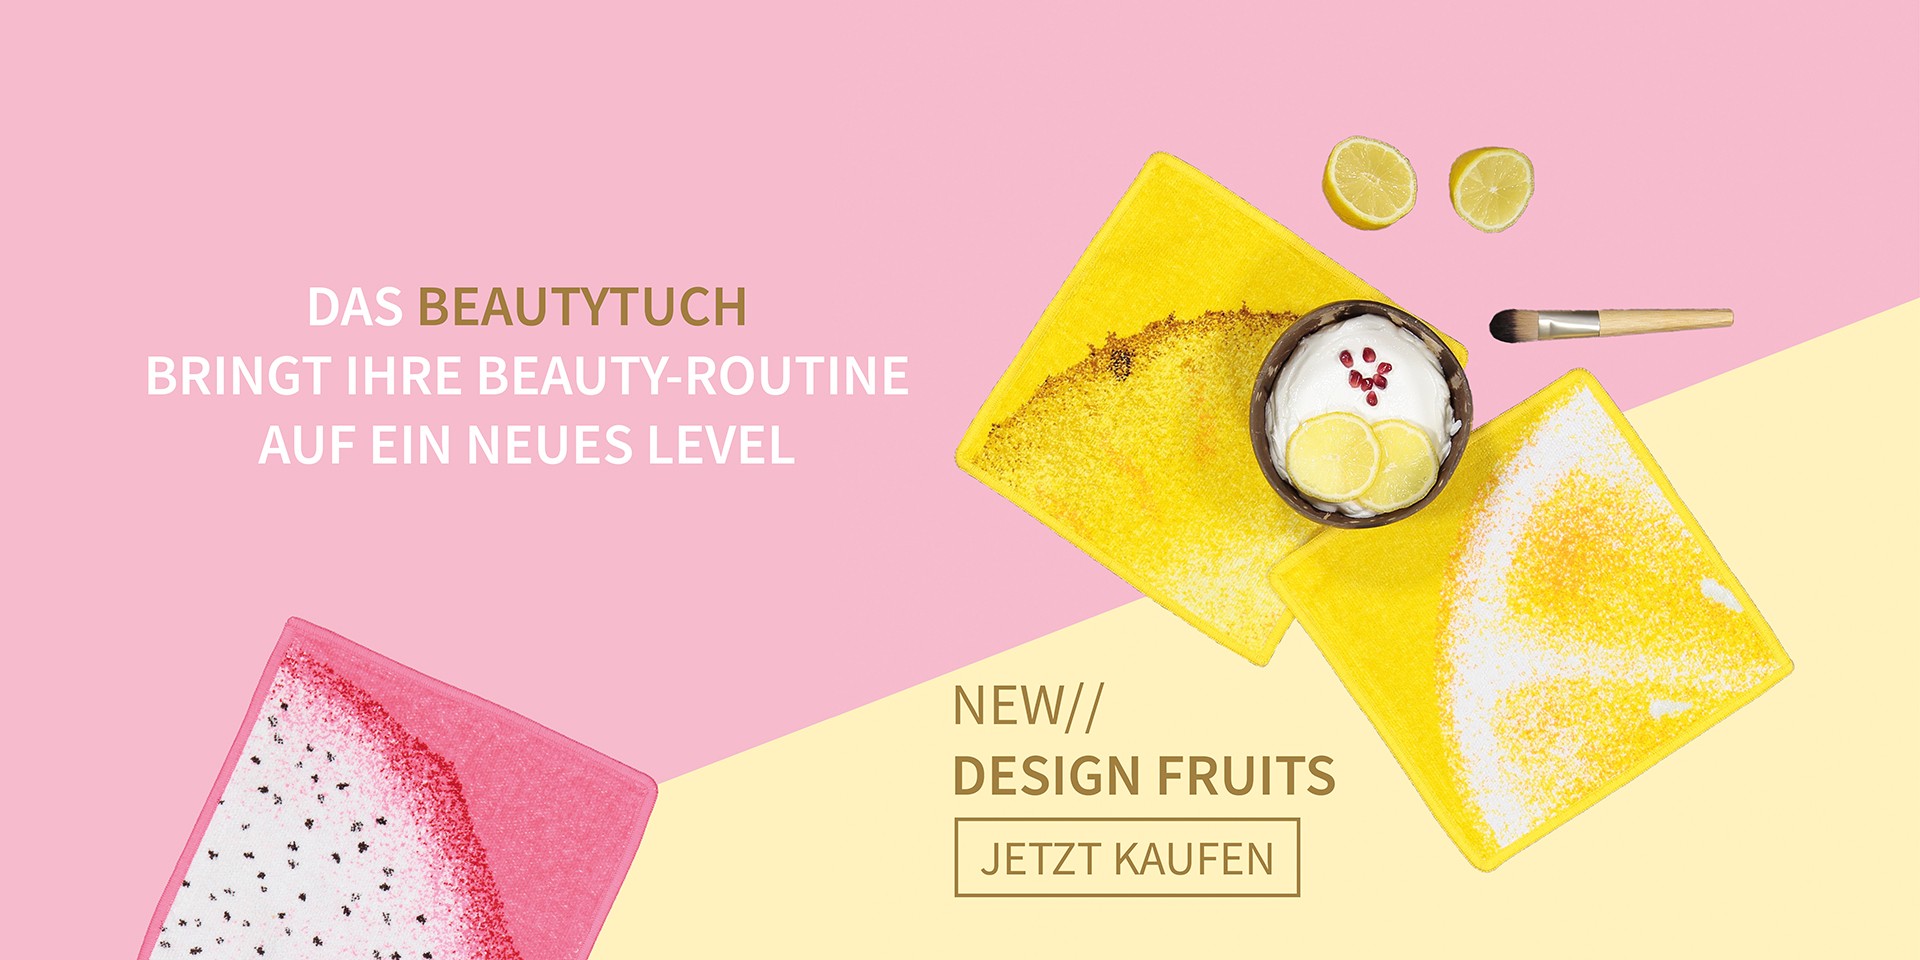 design-fruity-das-beautytuch-bringt-ihre-beauty-routine-auf-ein-neues-level-65-1.jpg